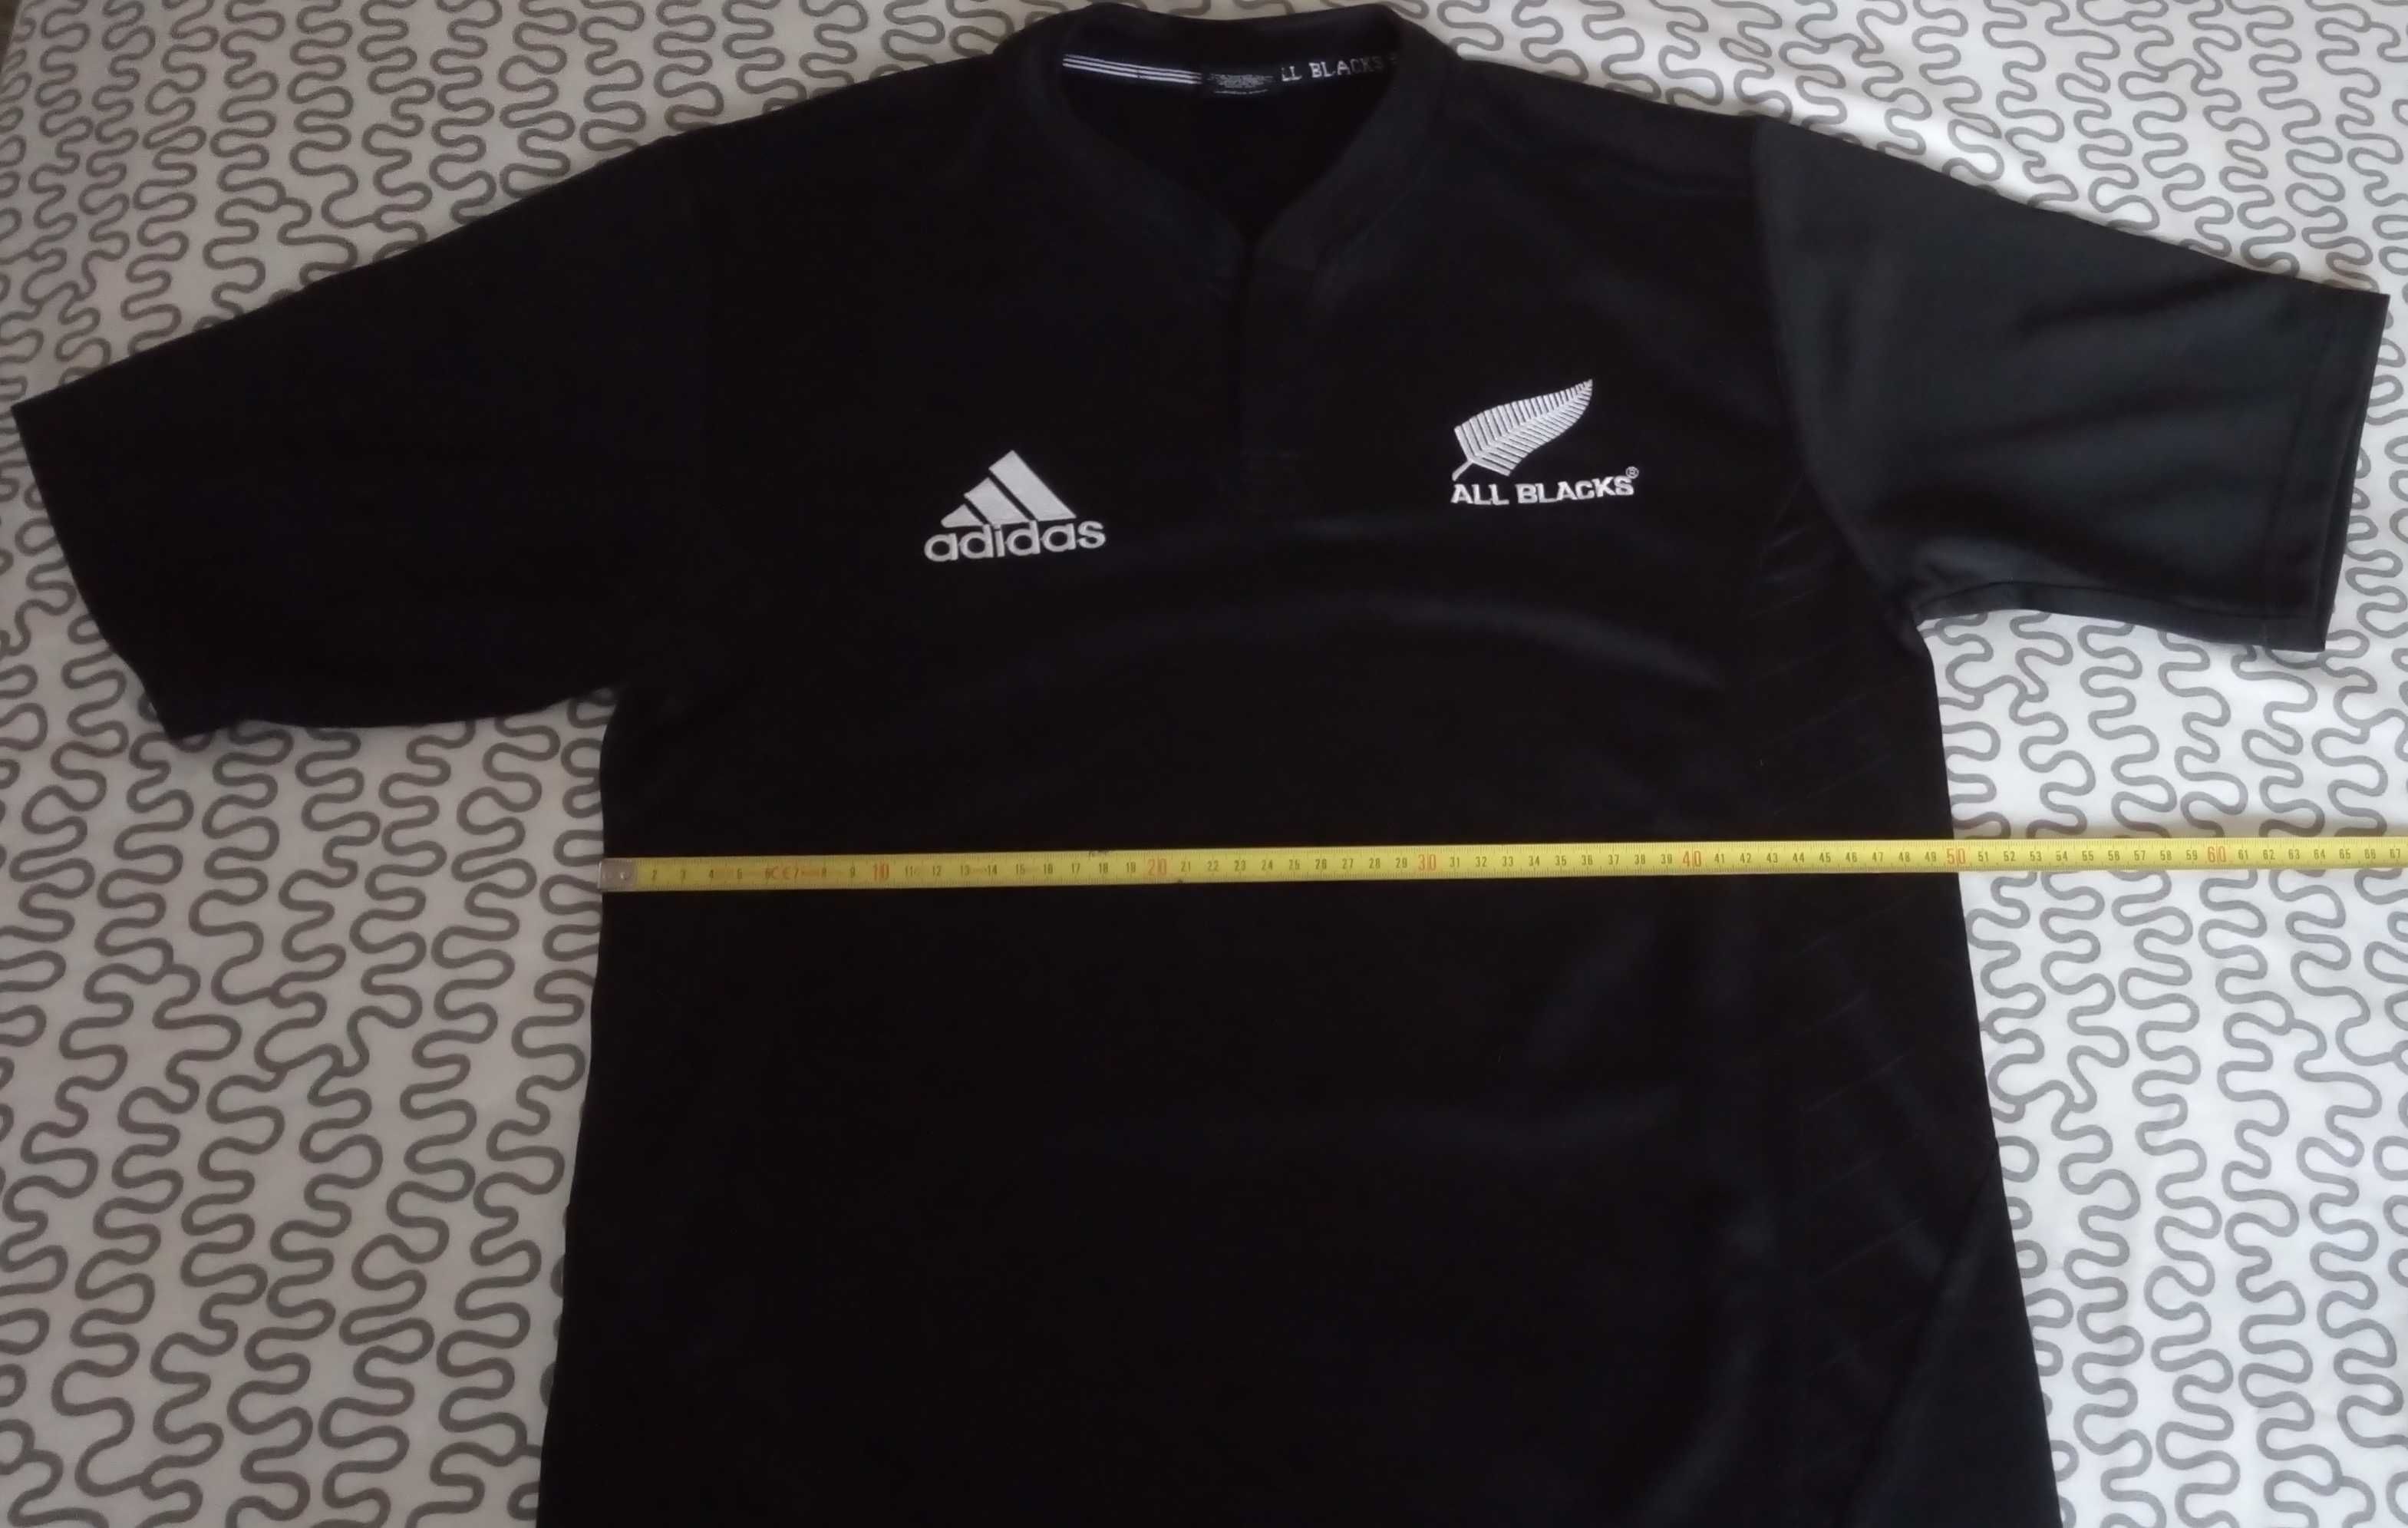 Adidas All Blacks Ferns Rugby Jersey